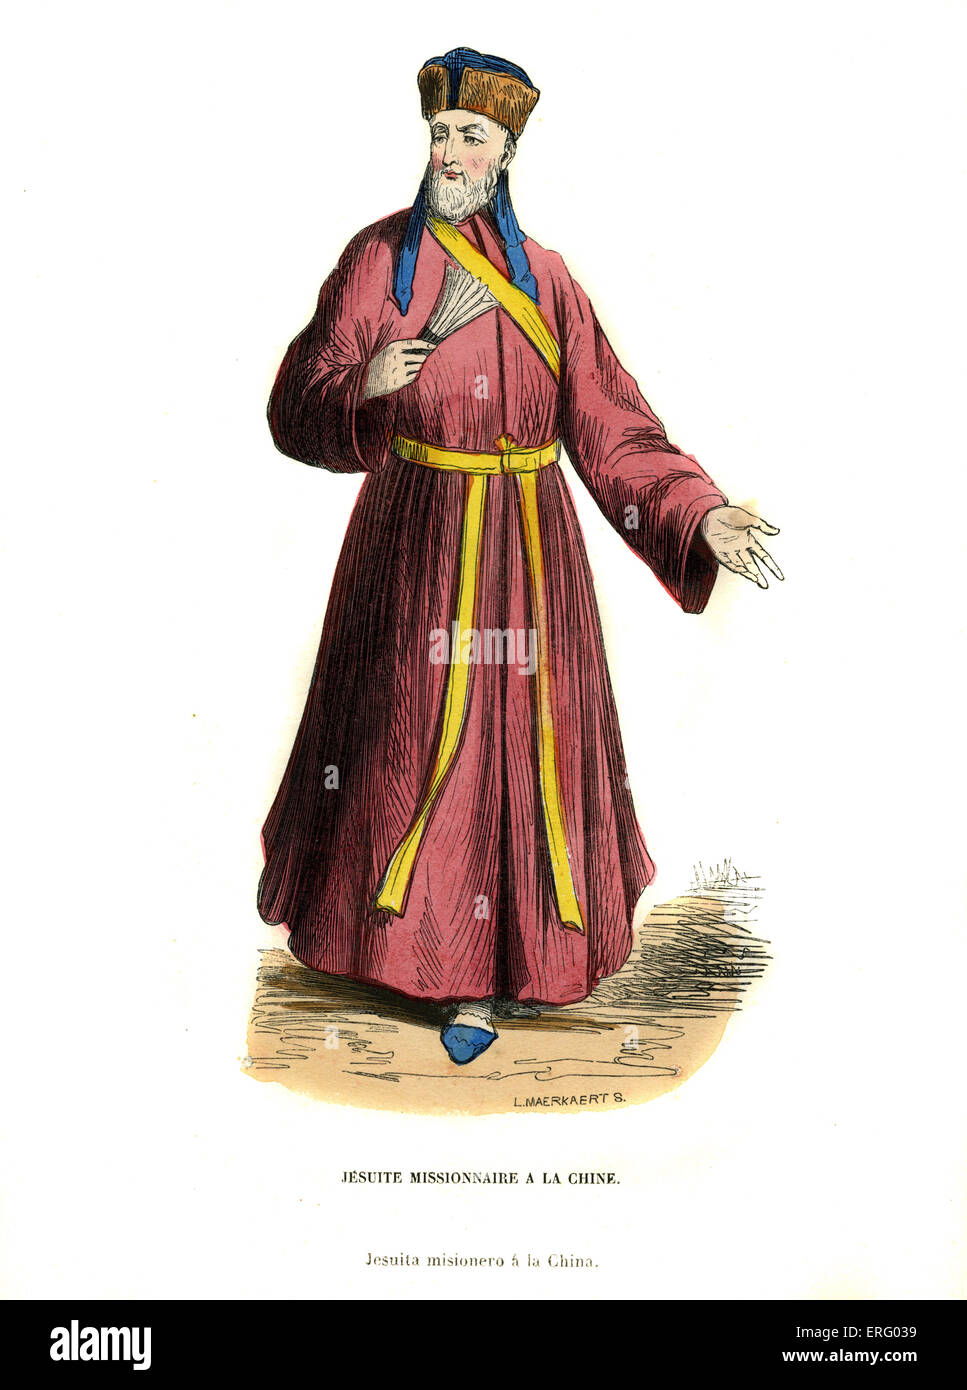 Missionario gesuita in Cina.Eventualmente Matteo Ricci, noto anche come P. Trugault - a Macao, (1552-1610) Cina, colorati a mano Foto Stock